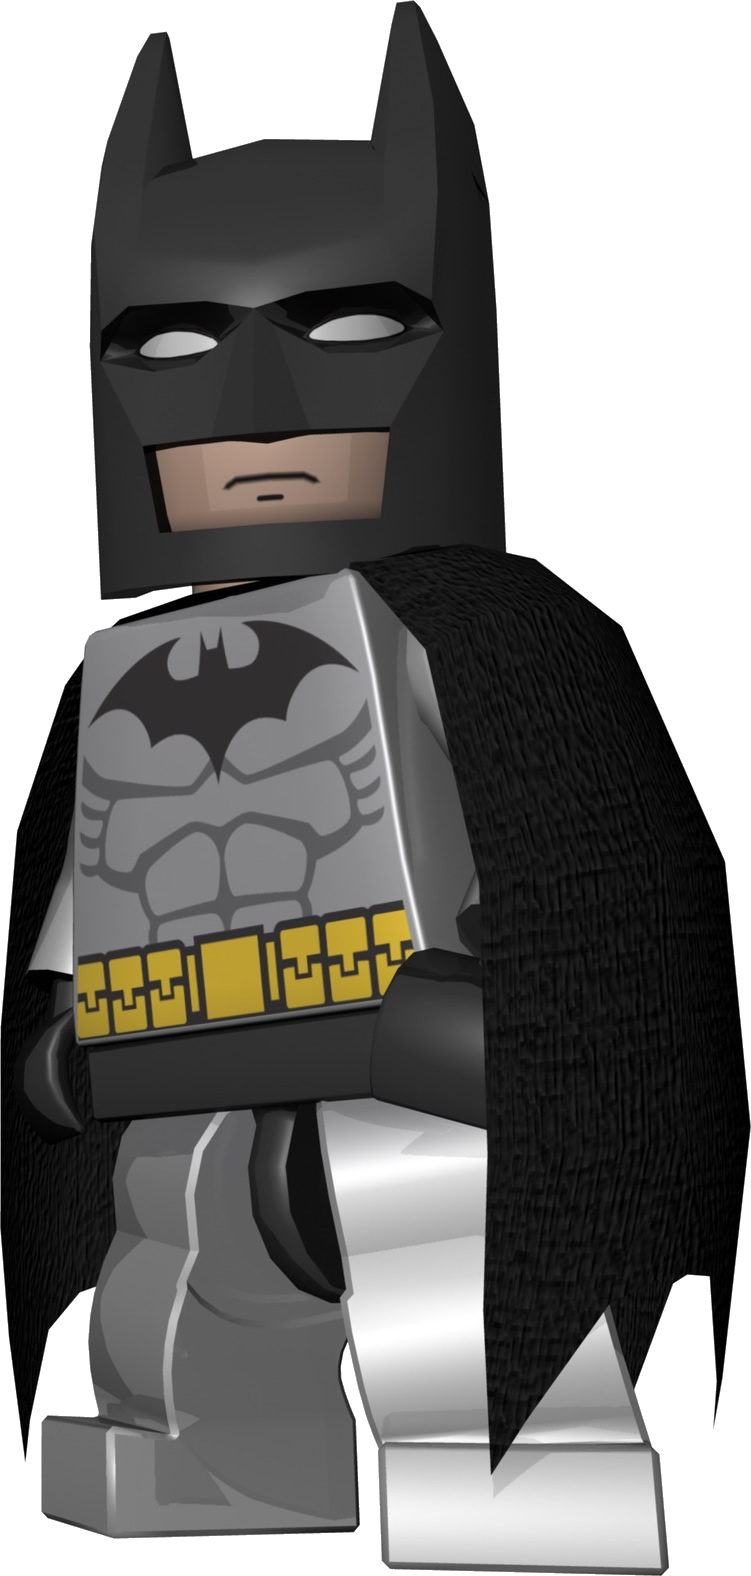 new lego batman sets